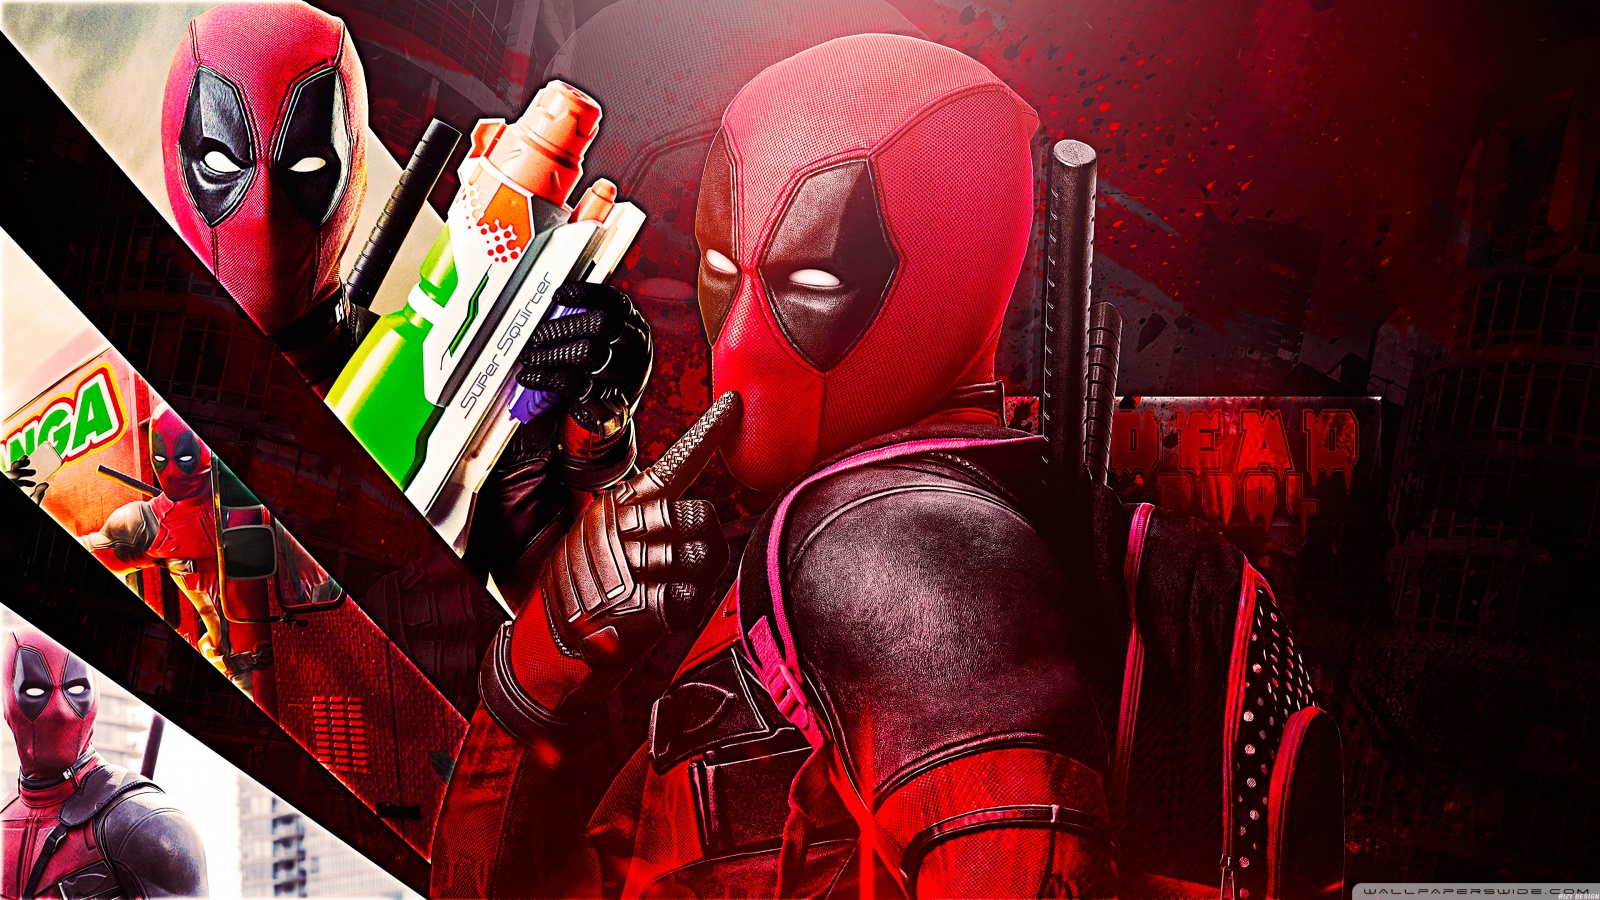 Deadpool 2 Lầy lội bạo lực và không dành cho người nghiêm túc  Điểm  NhạcPhimSách  Vietnam VietnamPlus